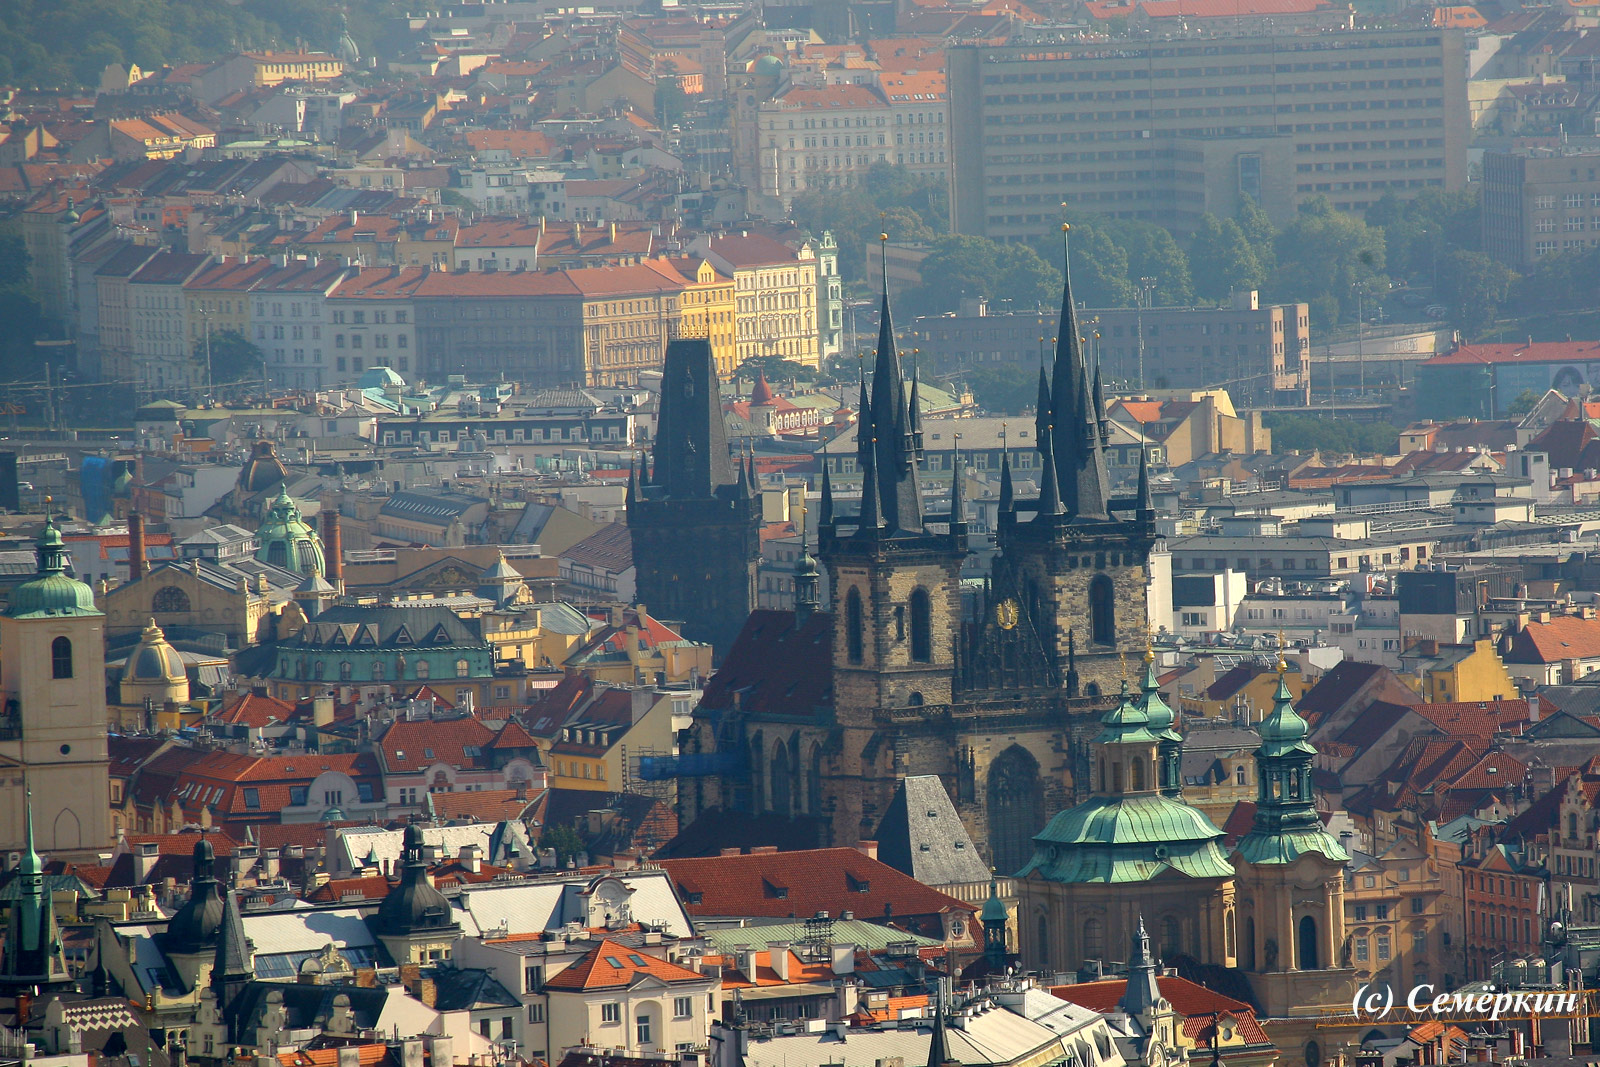  Панорамы Праги с башни собора Святого Вита - Пороховая башня и соборы на Староместской площади